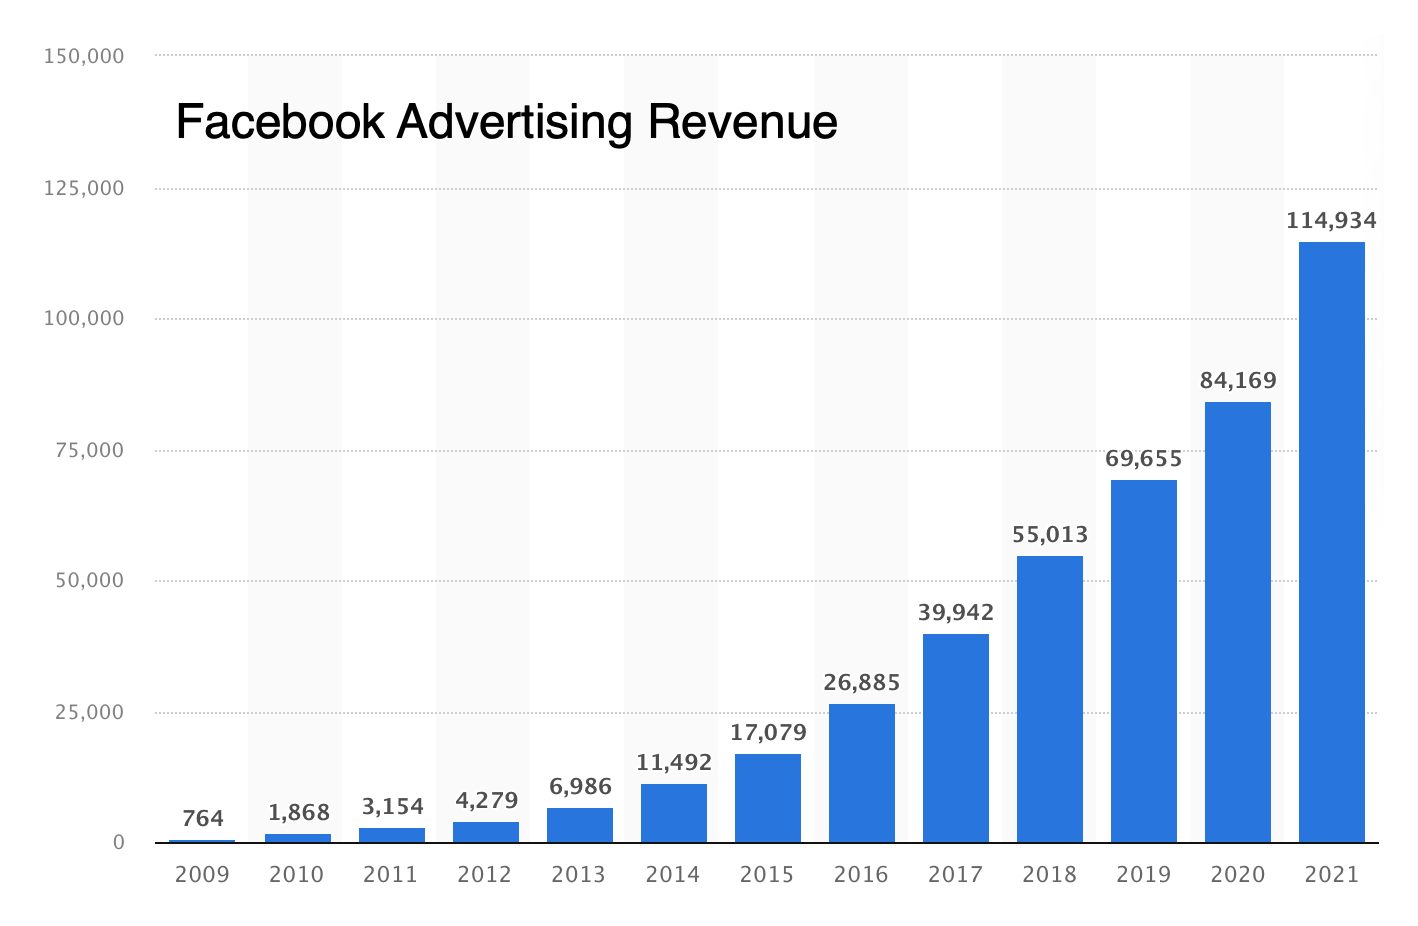 Facebook advertising revenue